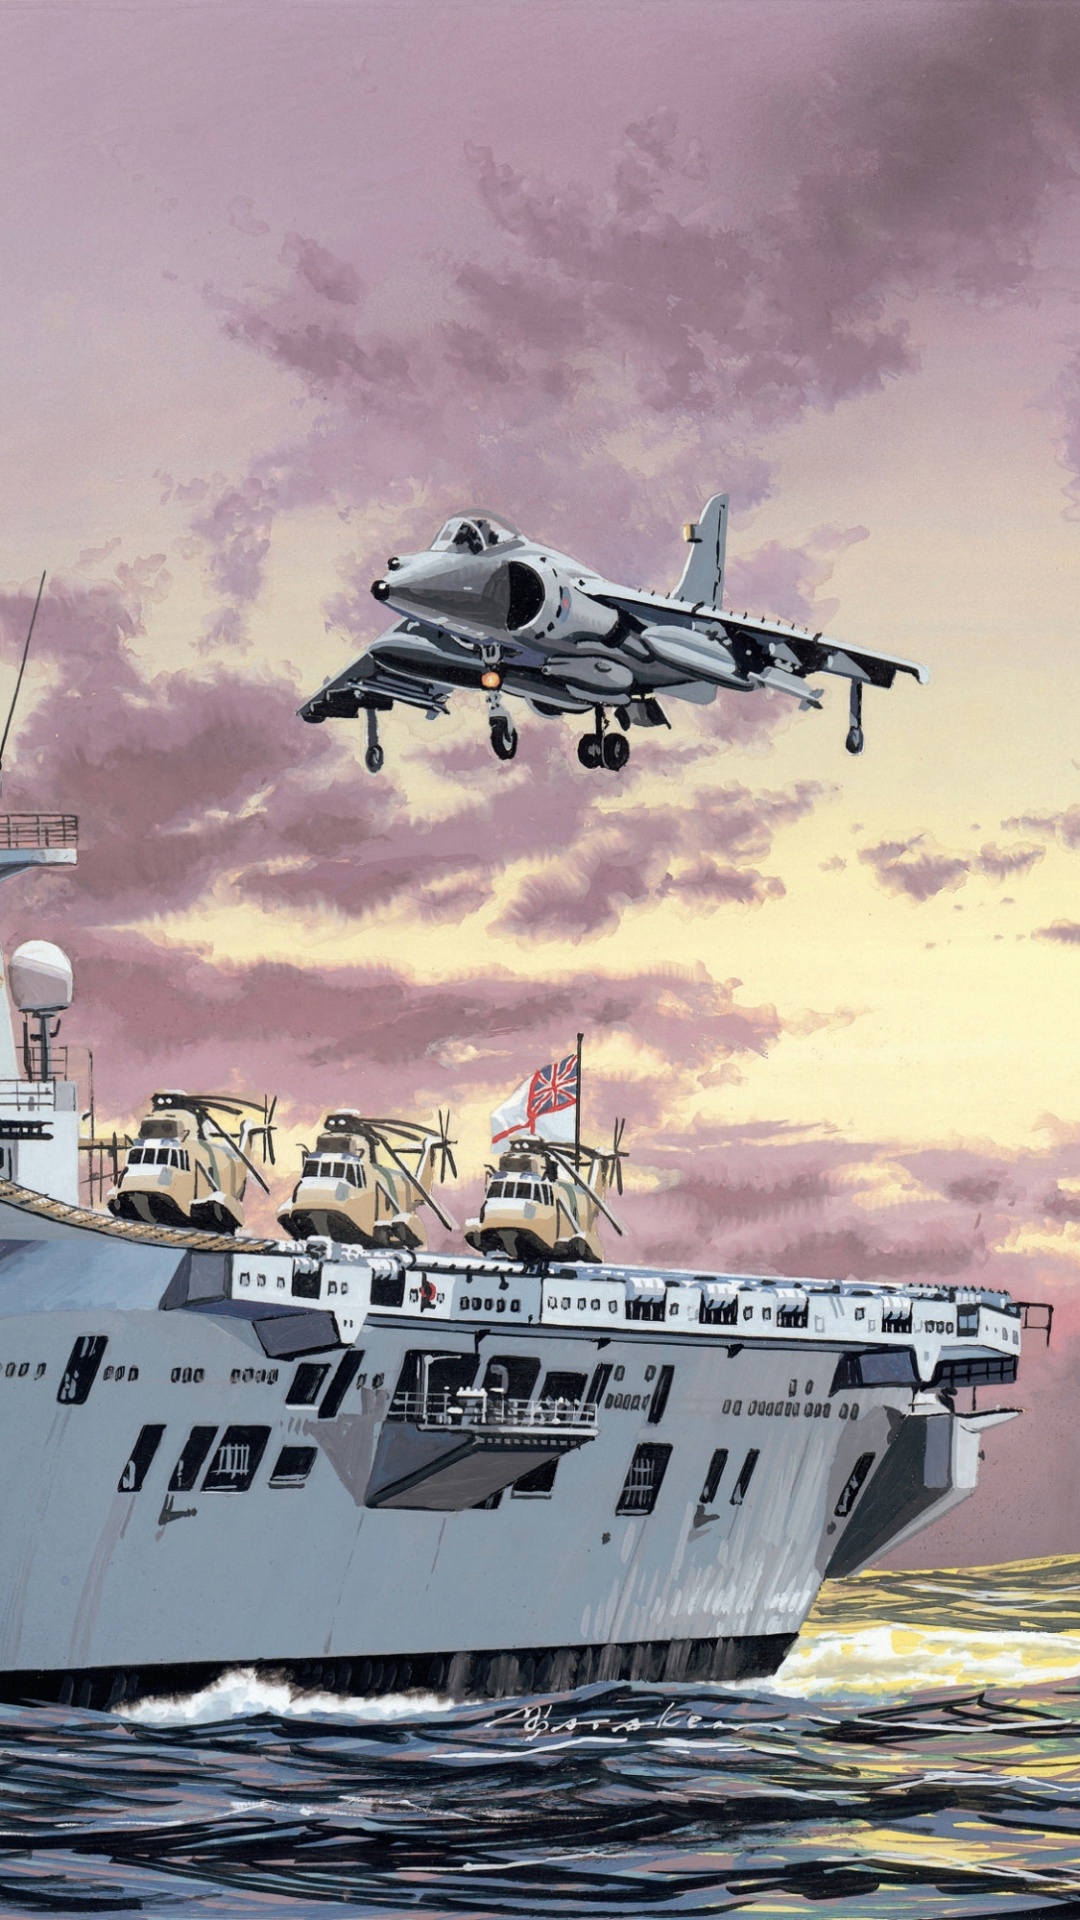 HMS Ark Royal, Königliche Marine, Flugzeugträger, Kriegsschiff, Marine-Schiff. Wallpaper in 1080x1920 Resolution